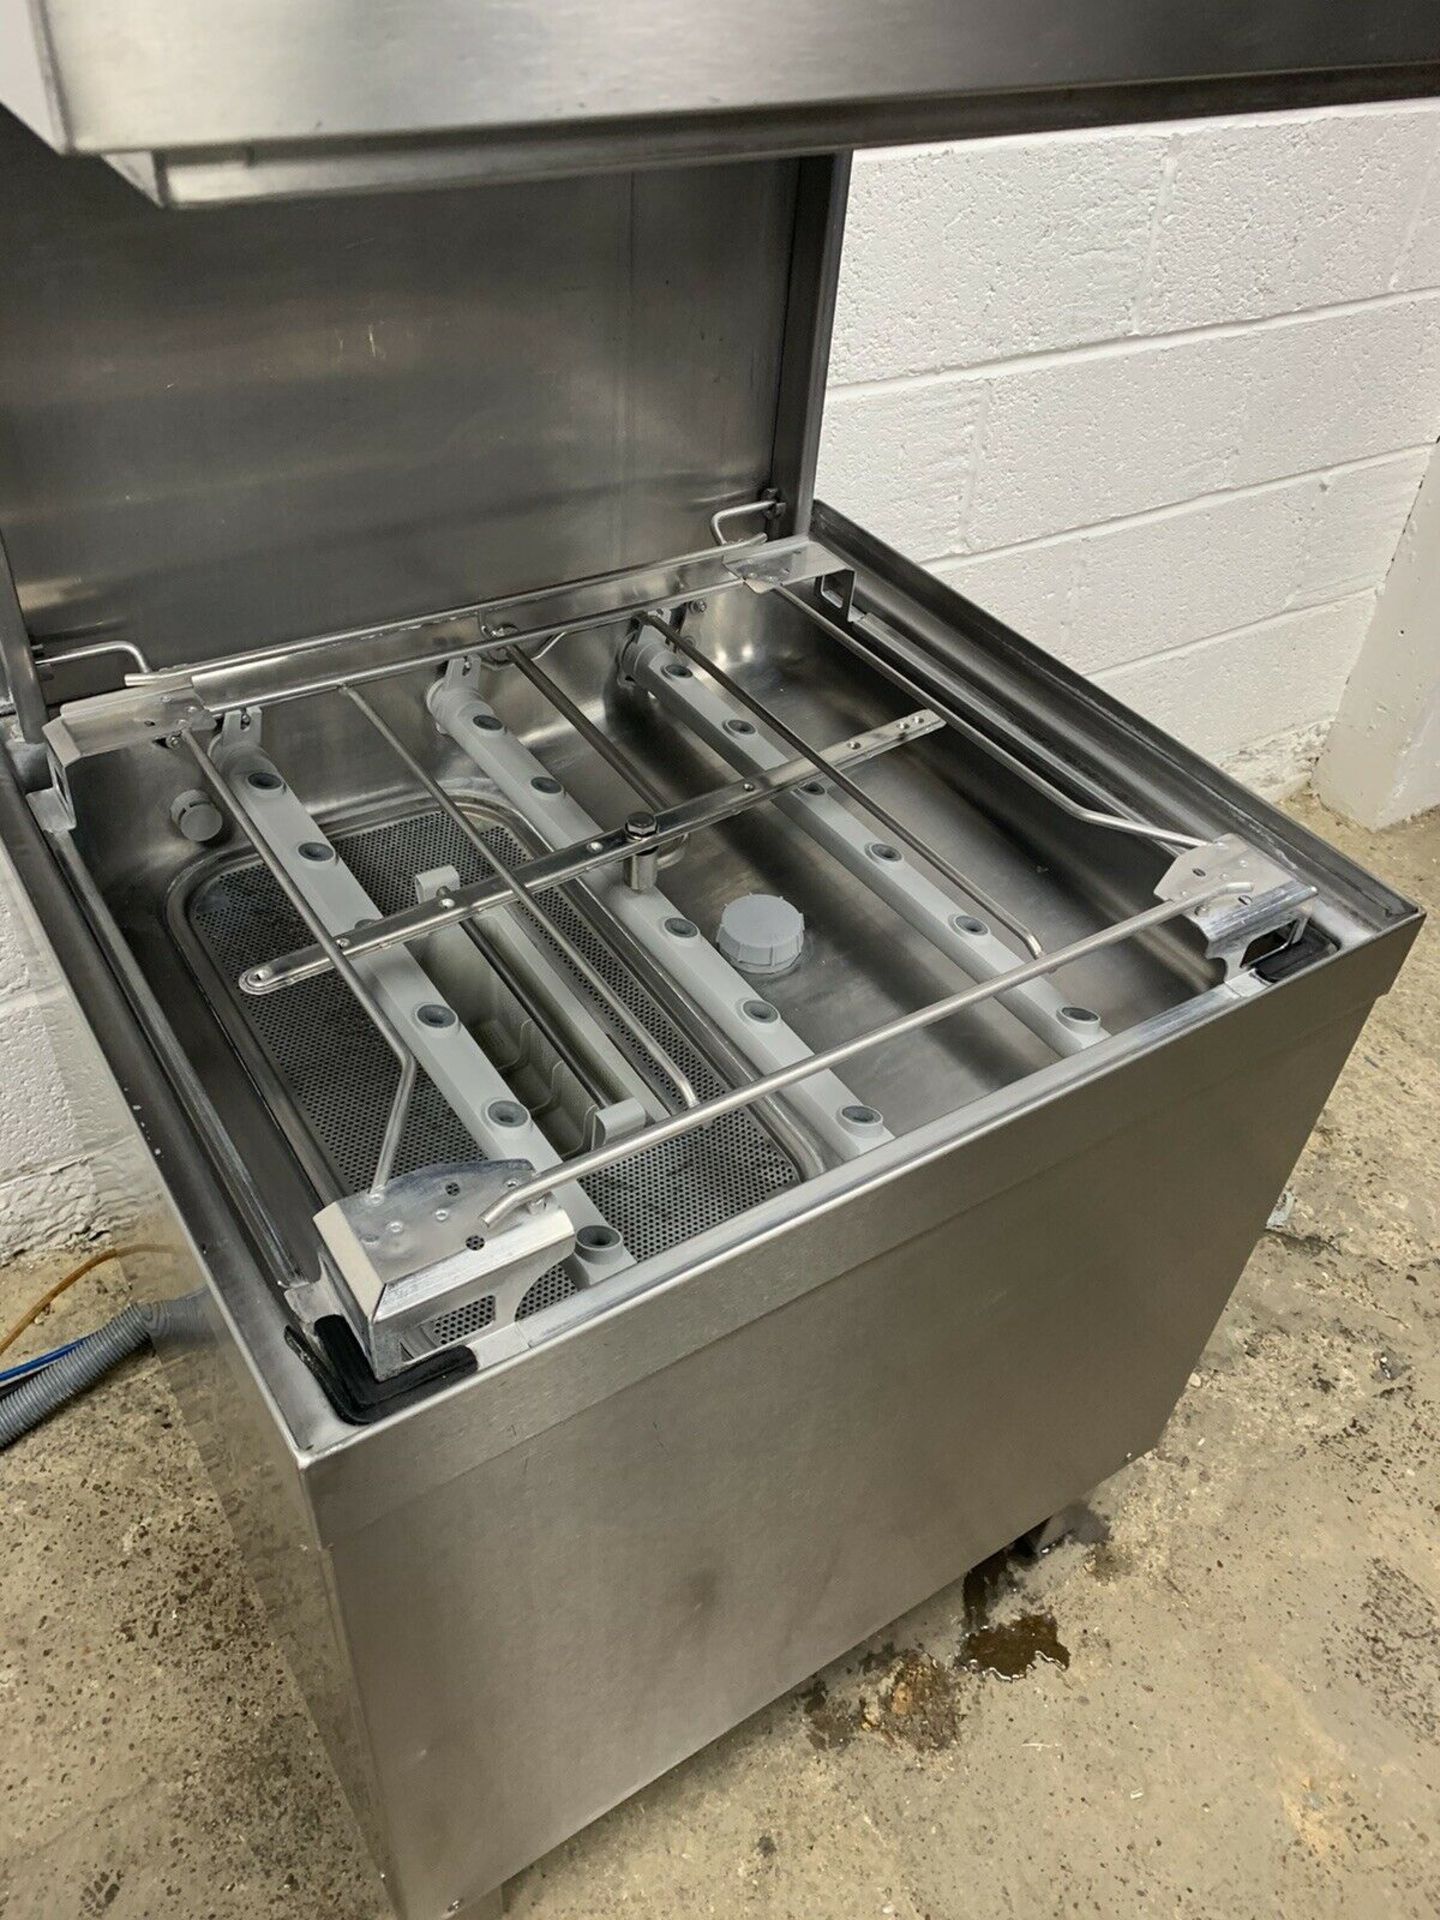 Winterhalter GS515 Pssthrough Dishwasher - Image 4 of 8